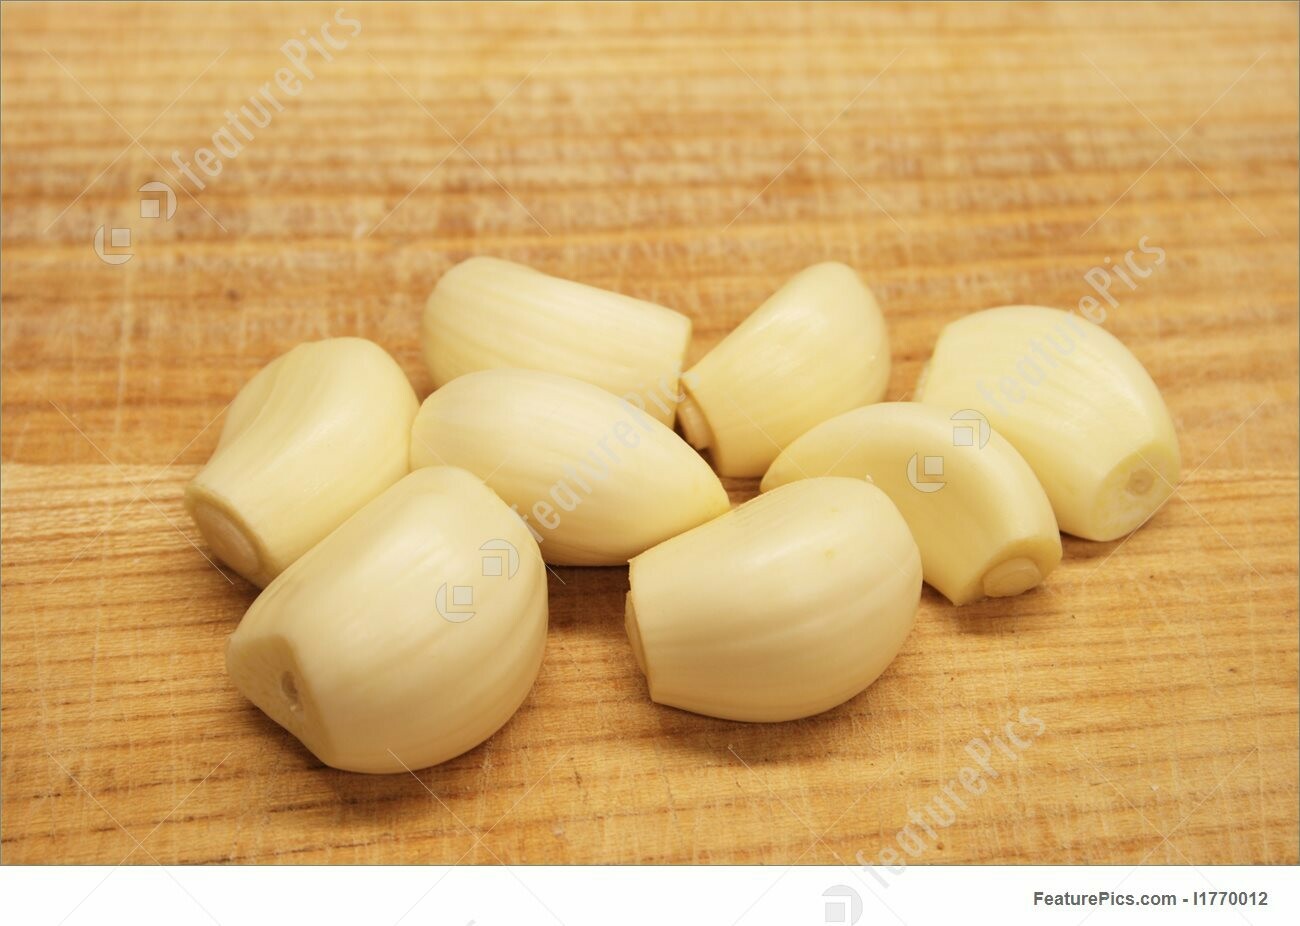 Garlic, Peeled 4/1 Gal.